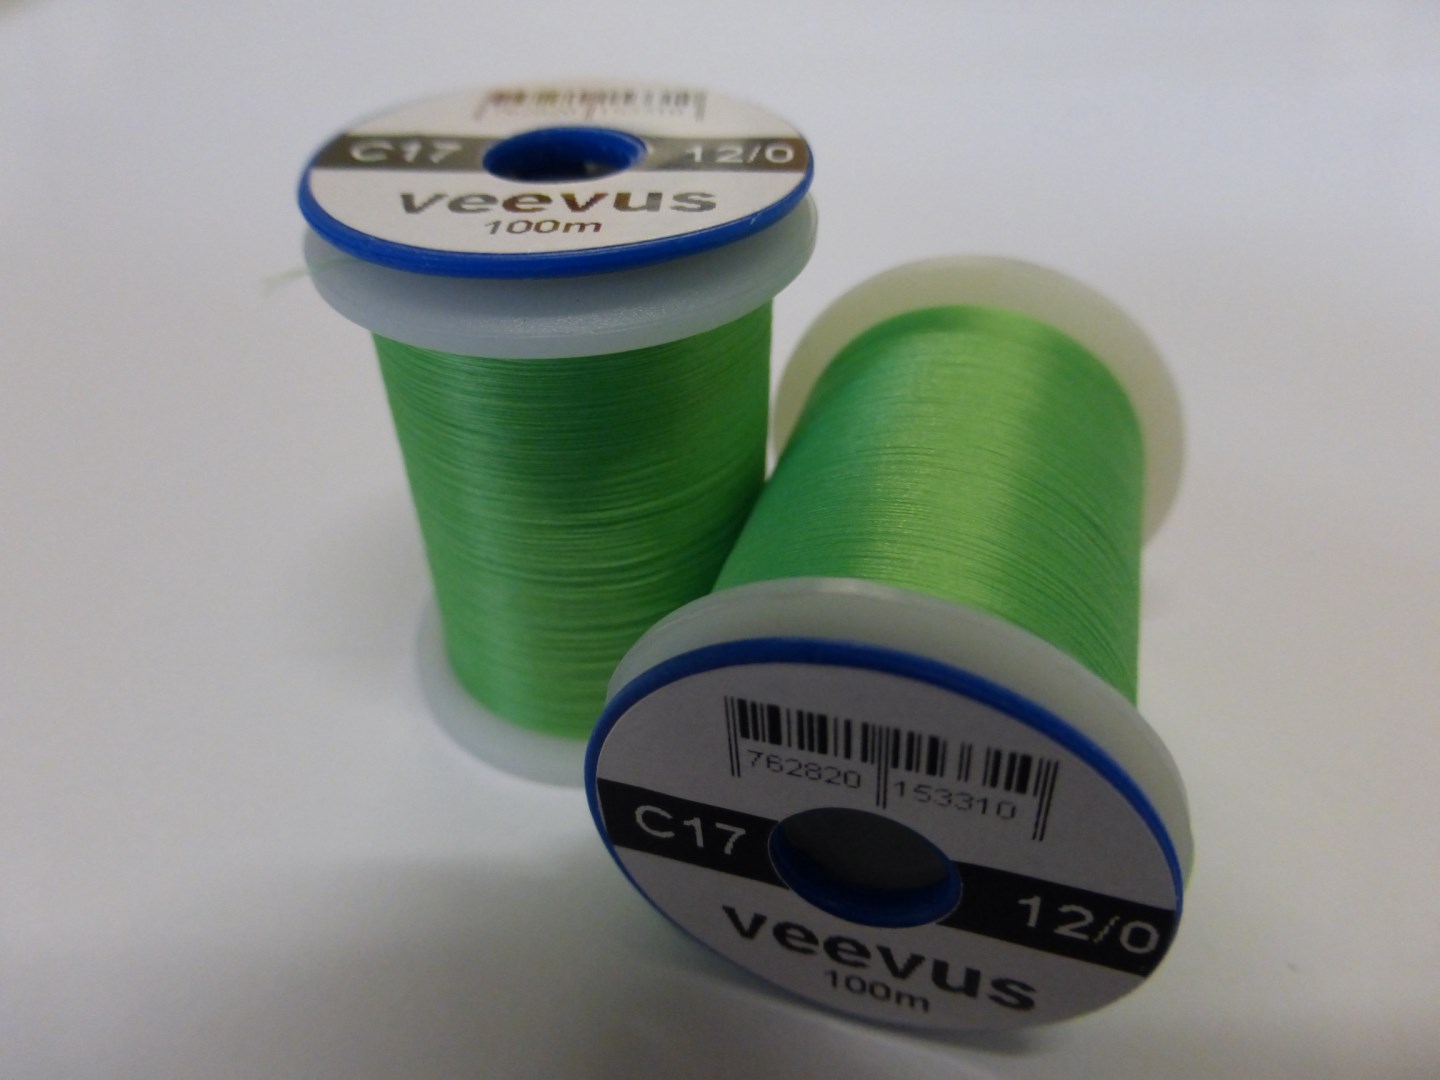 Veevus 12/0 Fluo Green C17